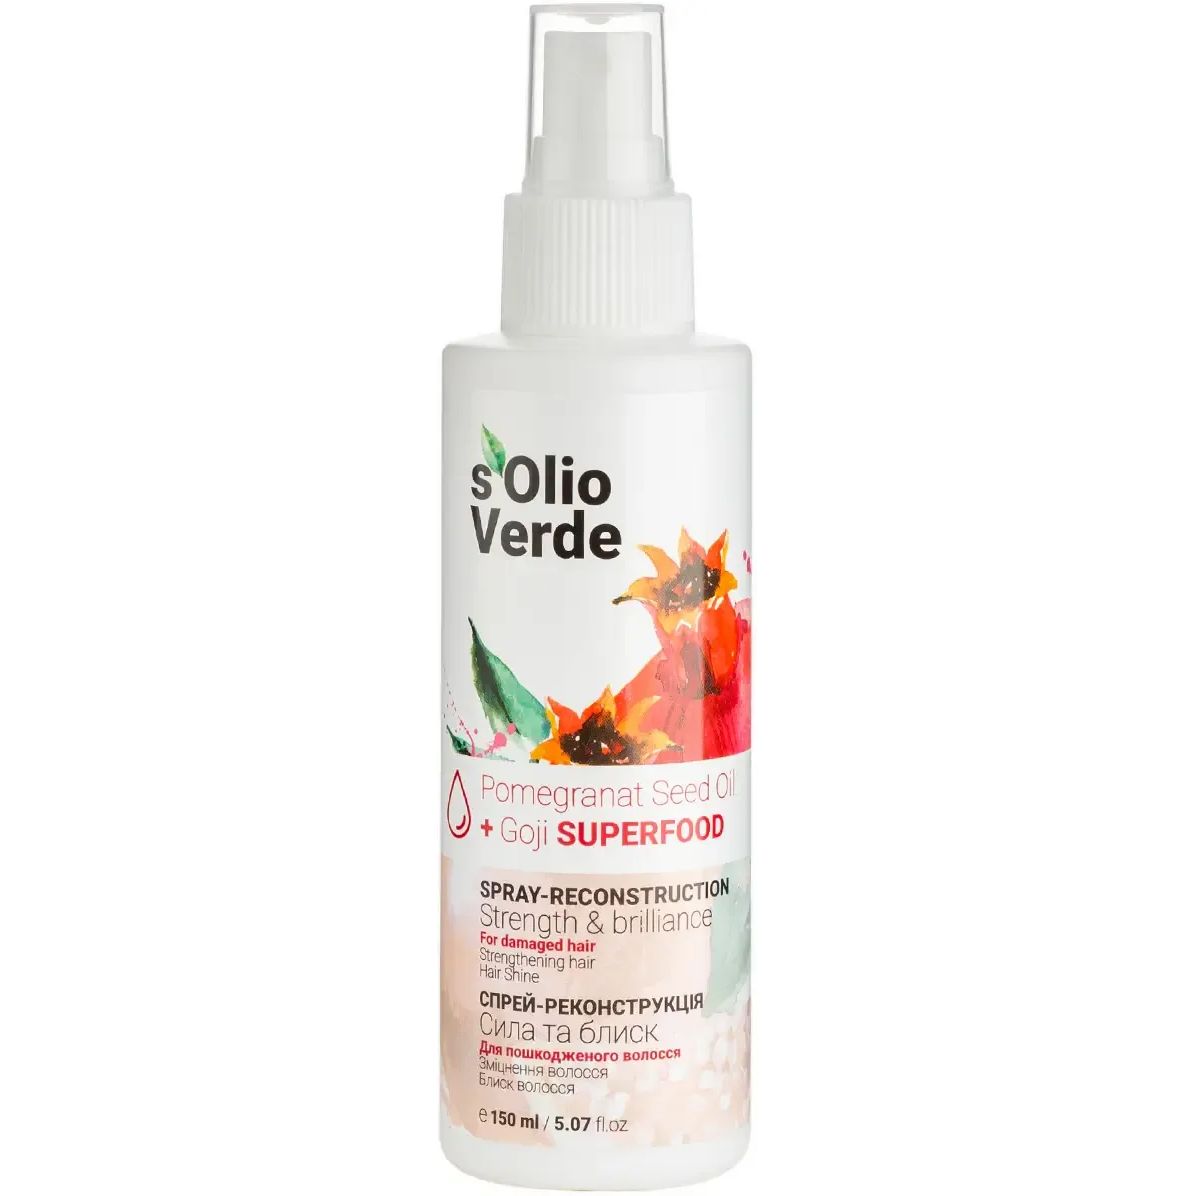 Спрей-реконструкция S'olio Verde Pomegranat Seed Oil для поврежденных волос 150 мл - фото 1